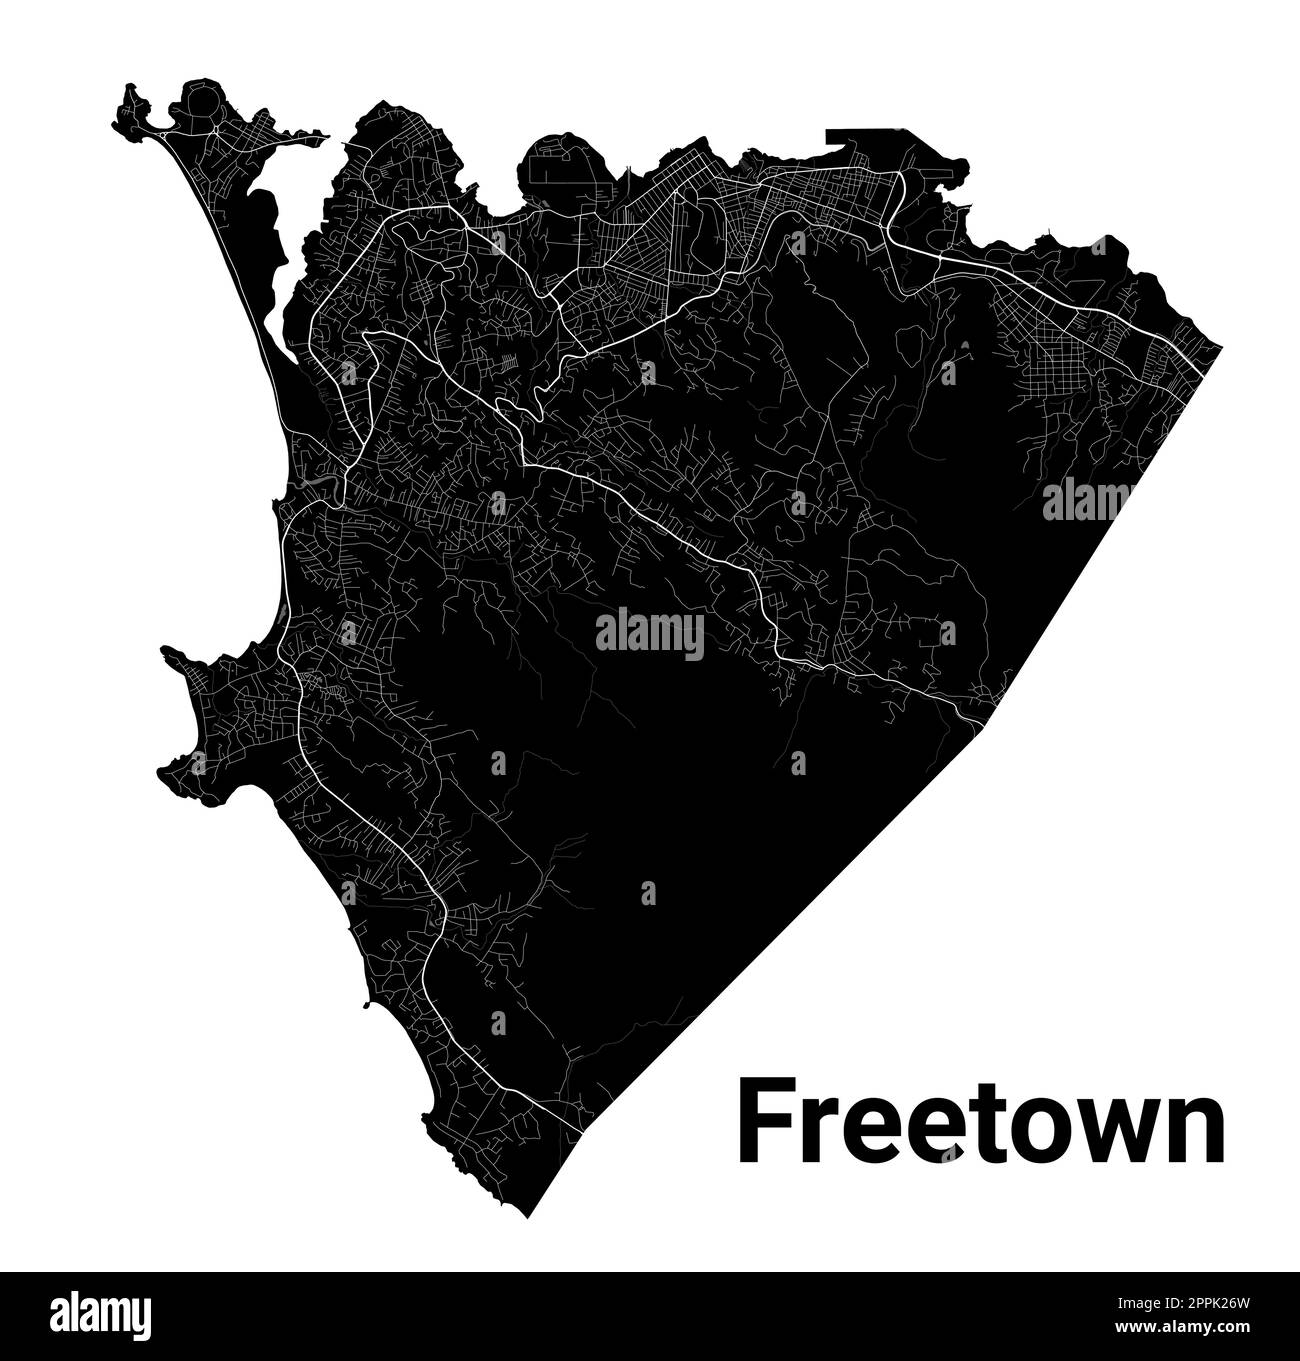 Carte de Freetown, Sierra Leone. Carte détaillée en noir du quartier administratif de Freetown. Vue sur l'aria métropolitain avec affiche CityScape. Terre noire avec ro blanc Illustration de Vecteur